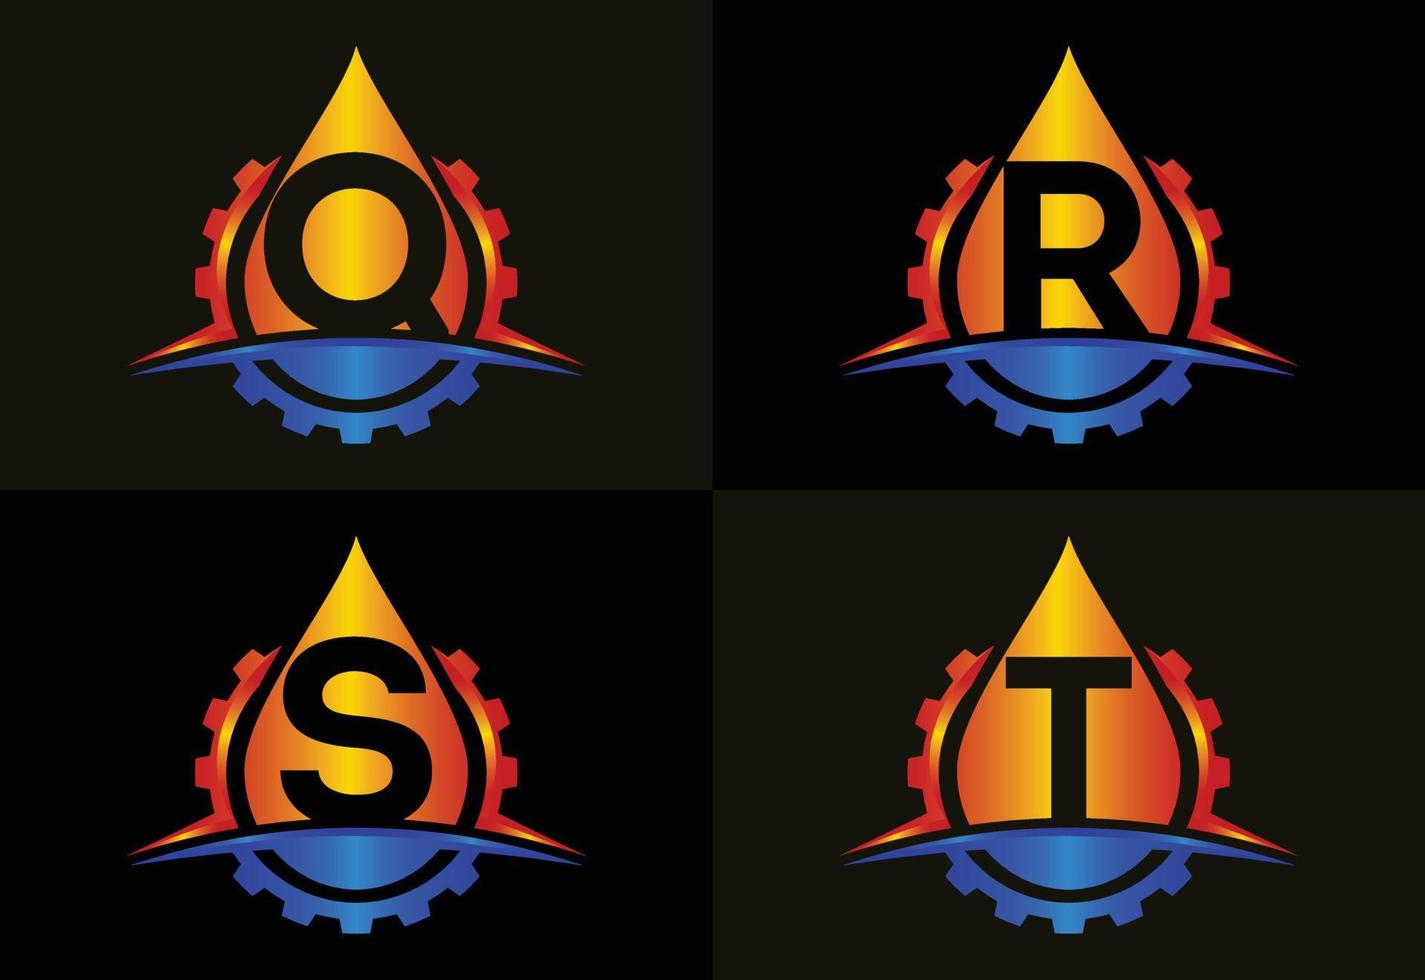 anfängliches qrst-monogrammalphabet mit getrieberauschen und öl. Öl- und Gas-Logo-Konzept. Schriftart-Emblem vektor